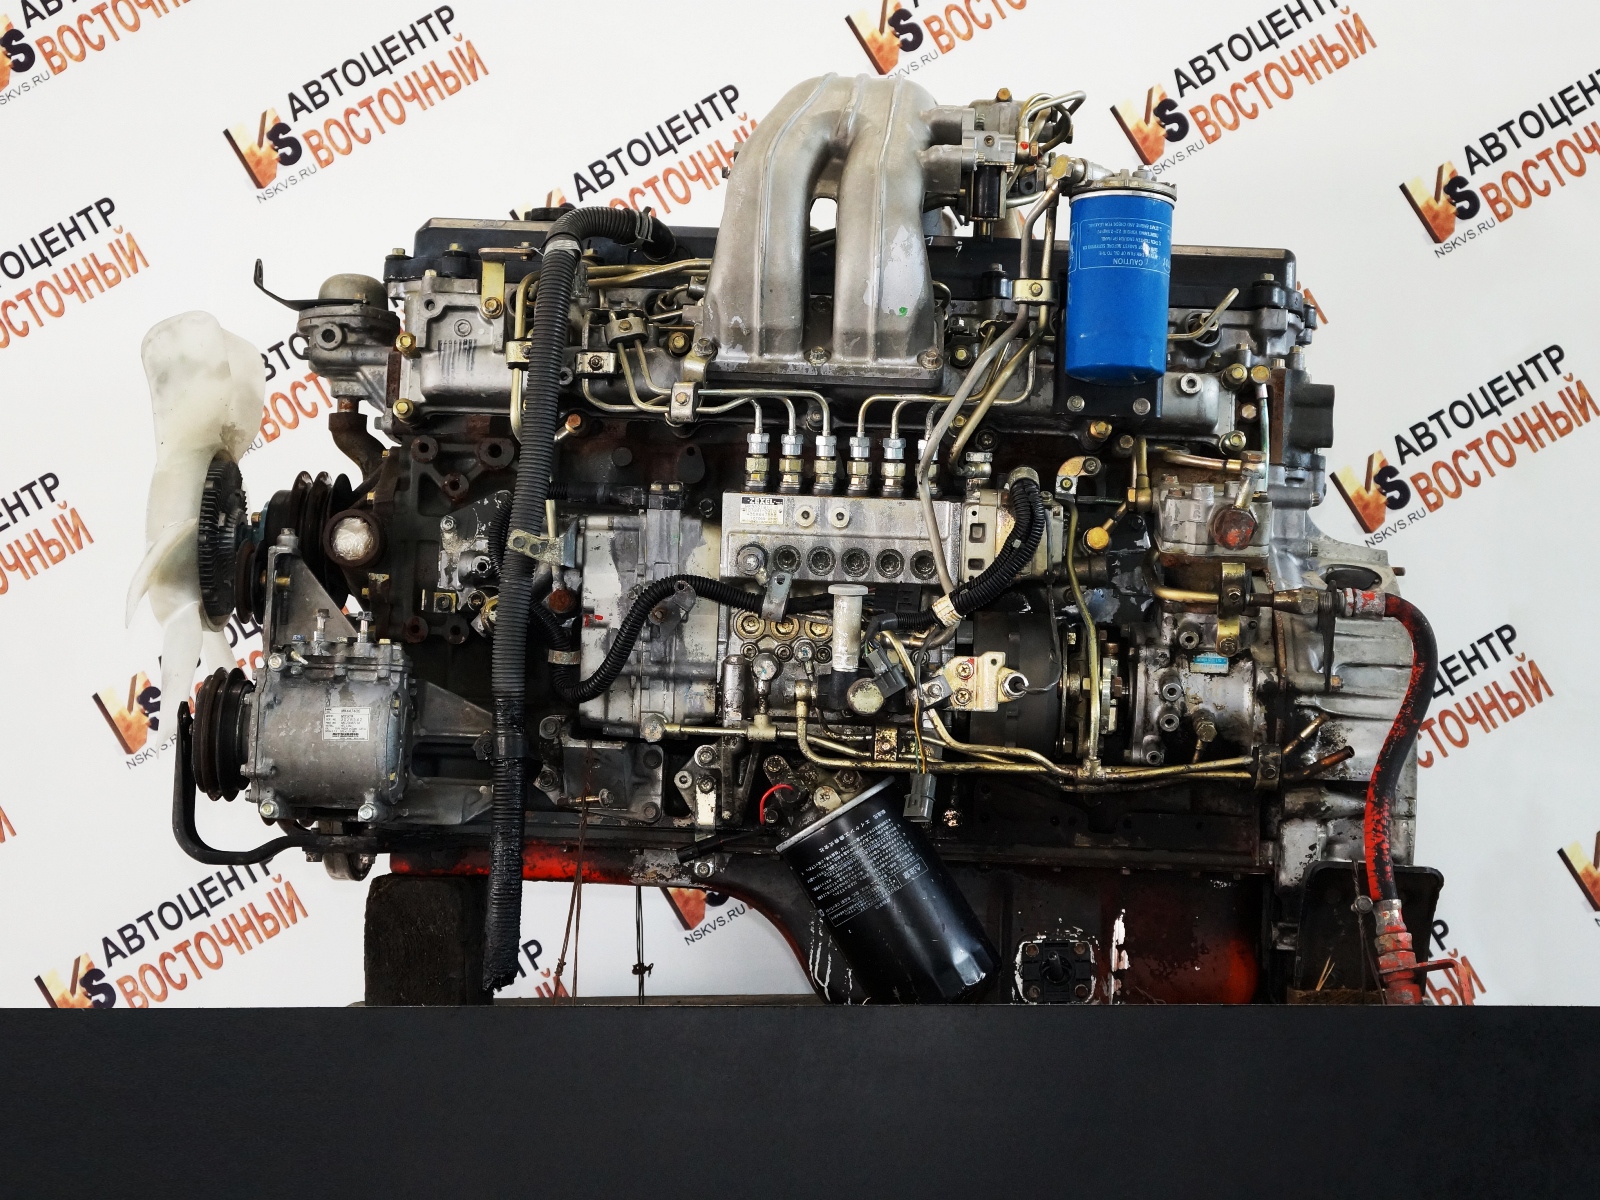 Двигатель, MMC, Fuso, FK-series, 6M61, Tics/рядный, 2004, 165kW/225PS, Контракт, MMC